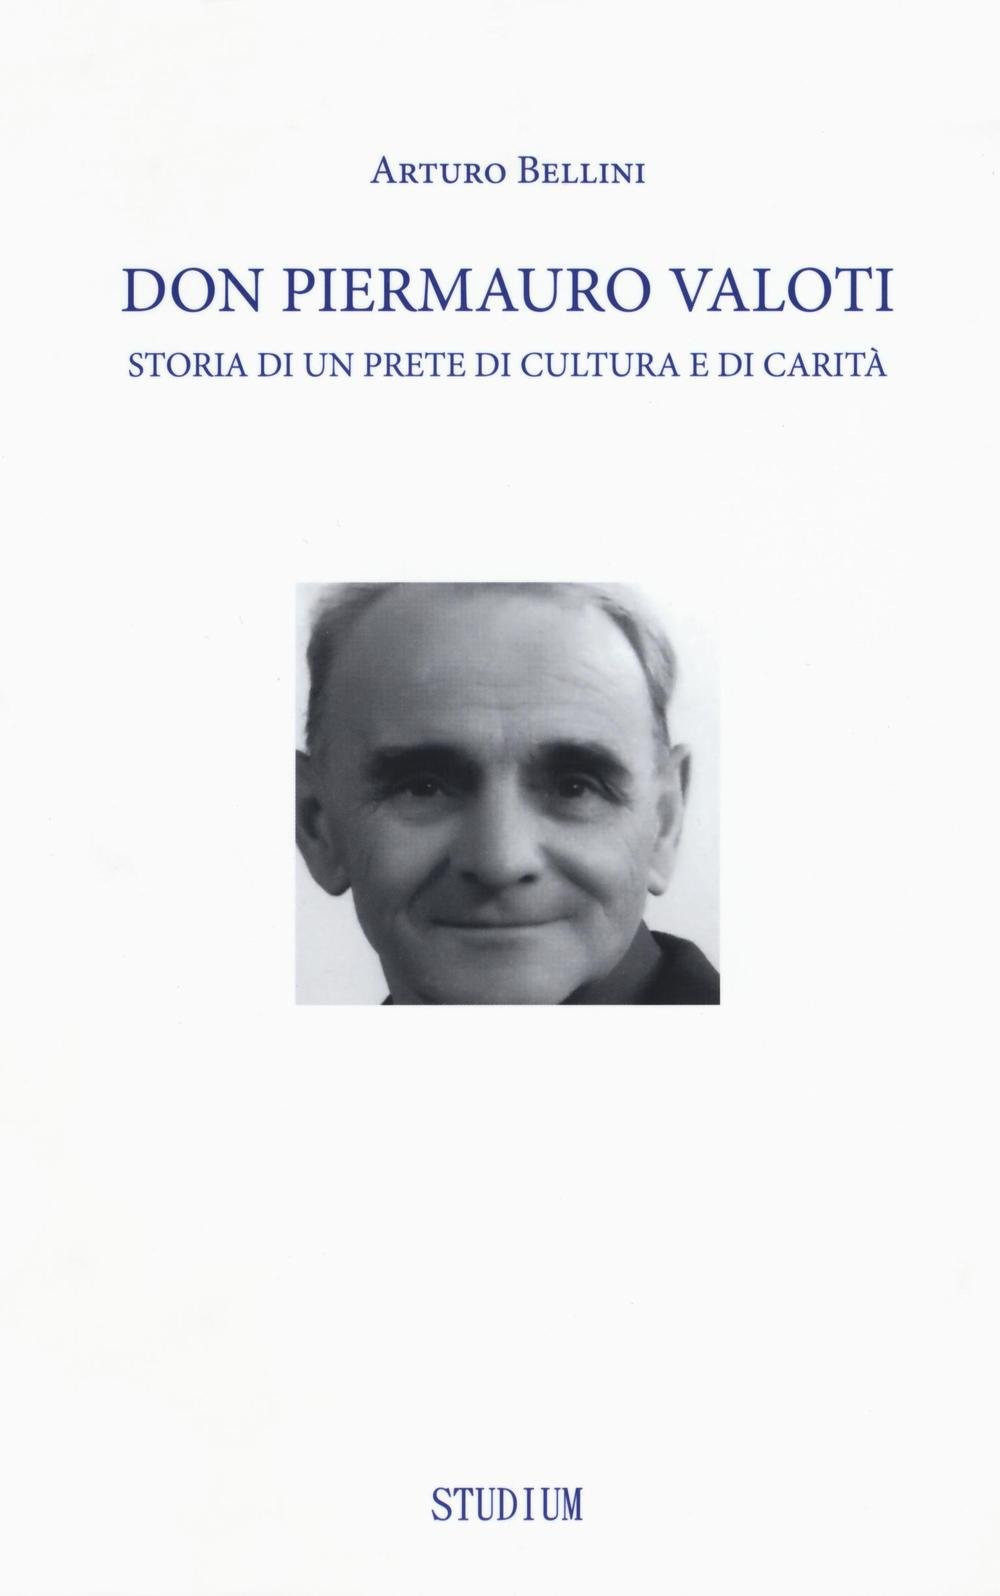 Don Piermauro Valoti. Storia di un prete di cultura e di carità